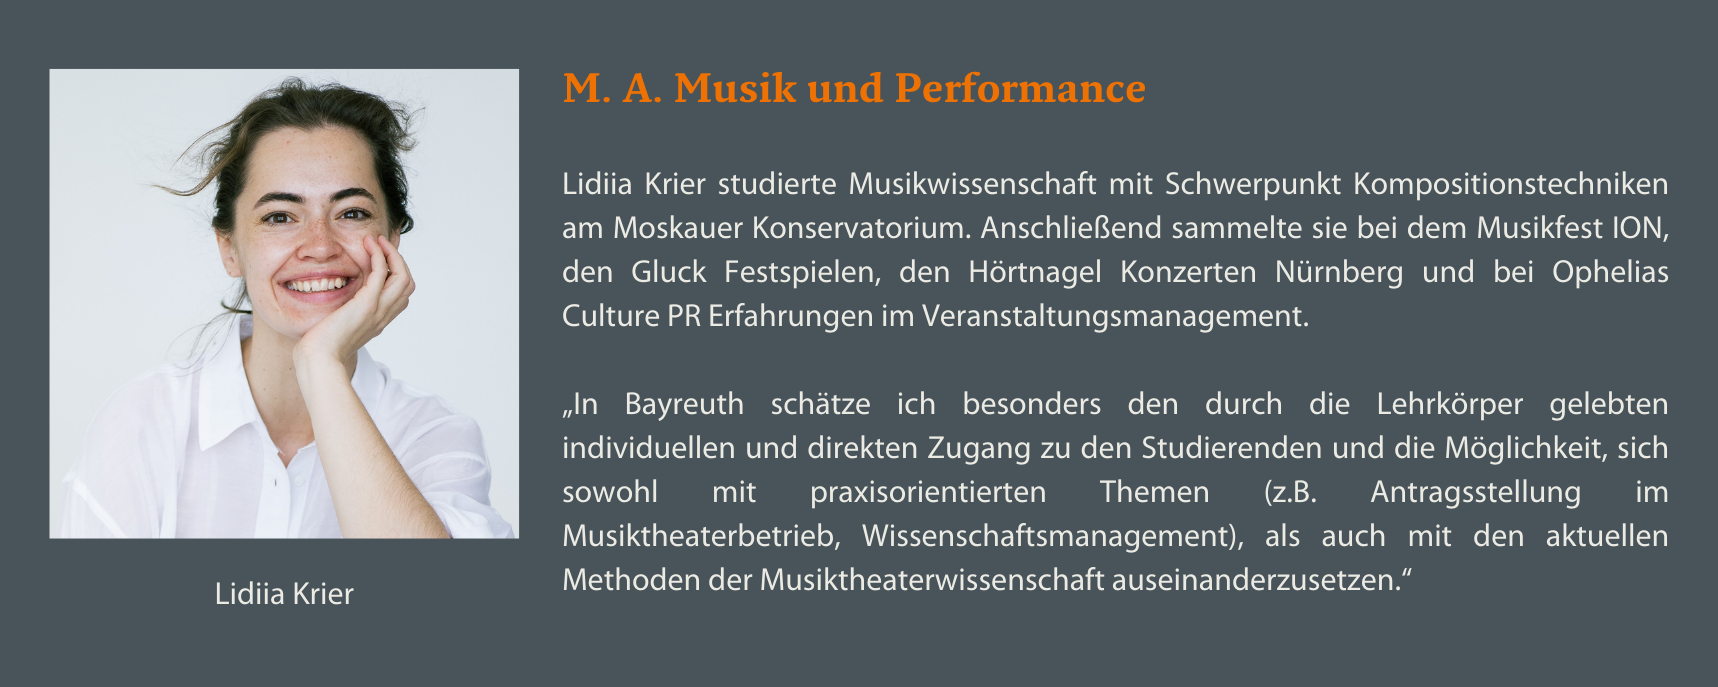 M.A. Musik und Performance Lidiia Krier Statement